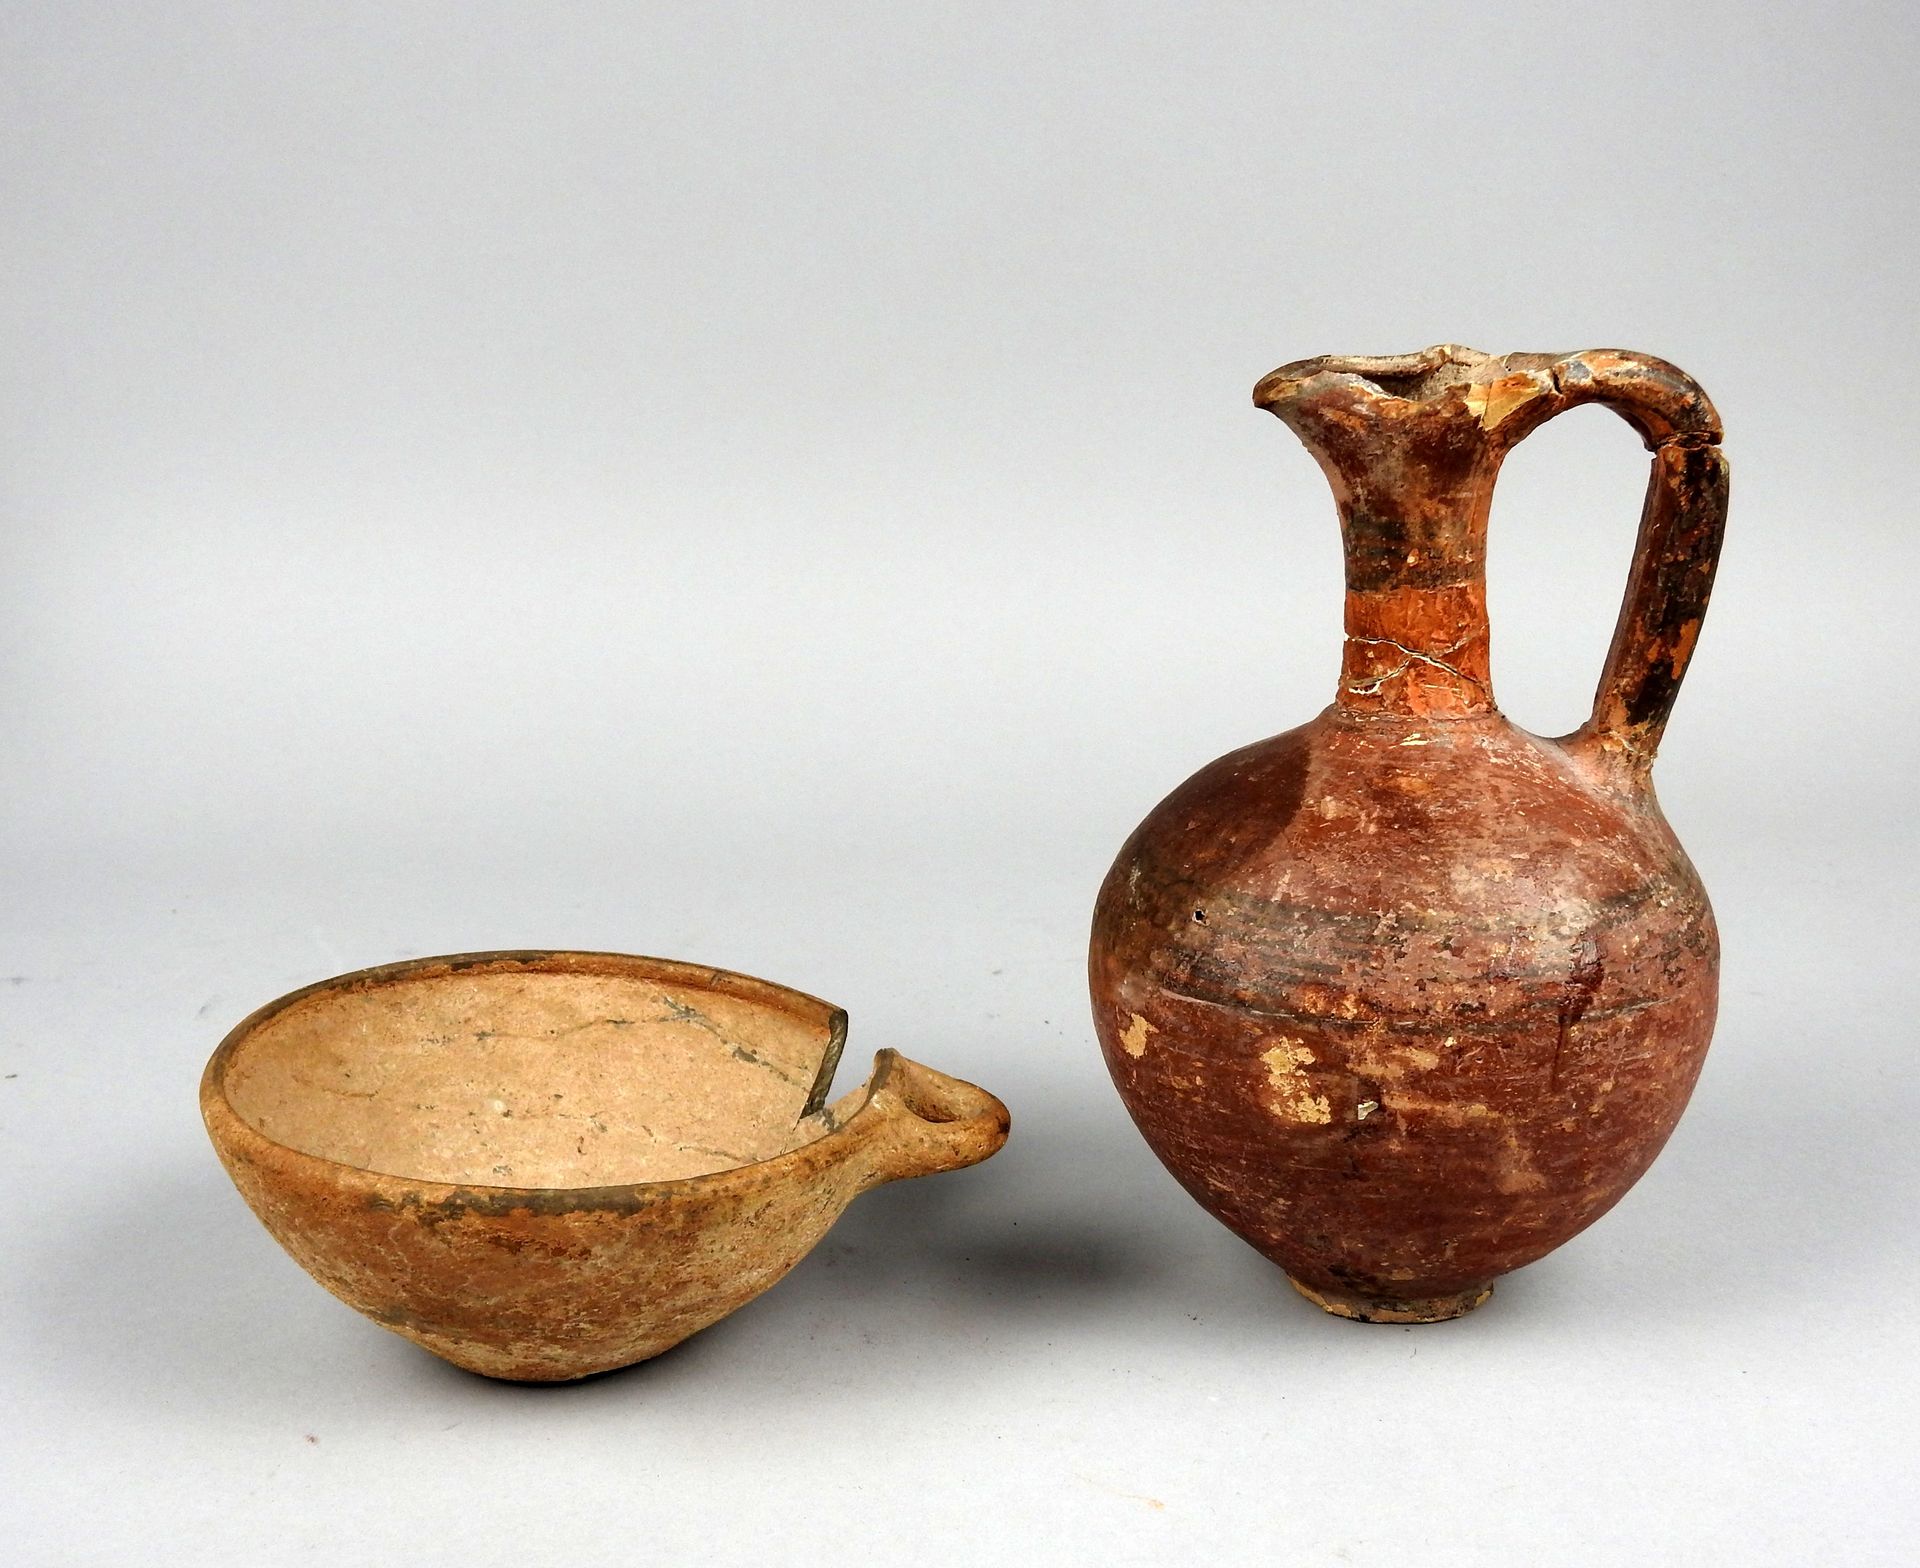 Null 套装包括一个带绘画装饰的水壶和一个带手柄的碗

兵马俑13和16厘米的修复和缺失部分

古代时期